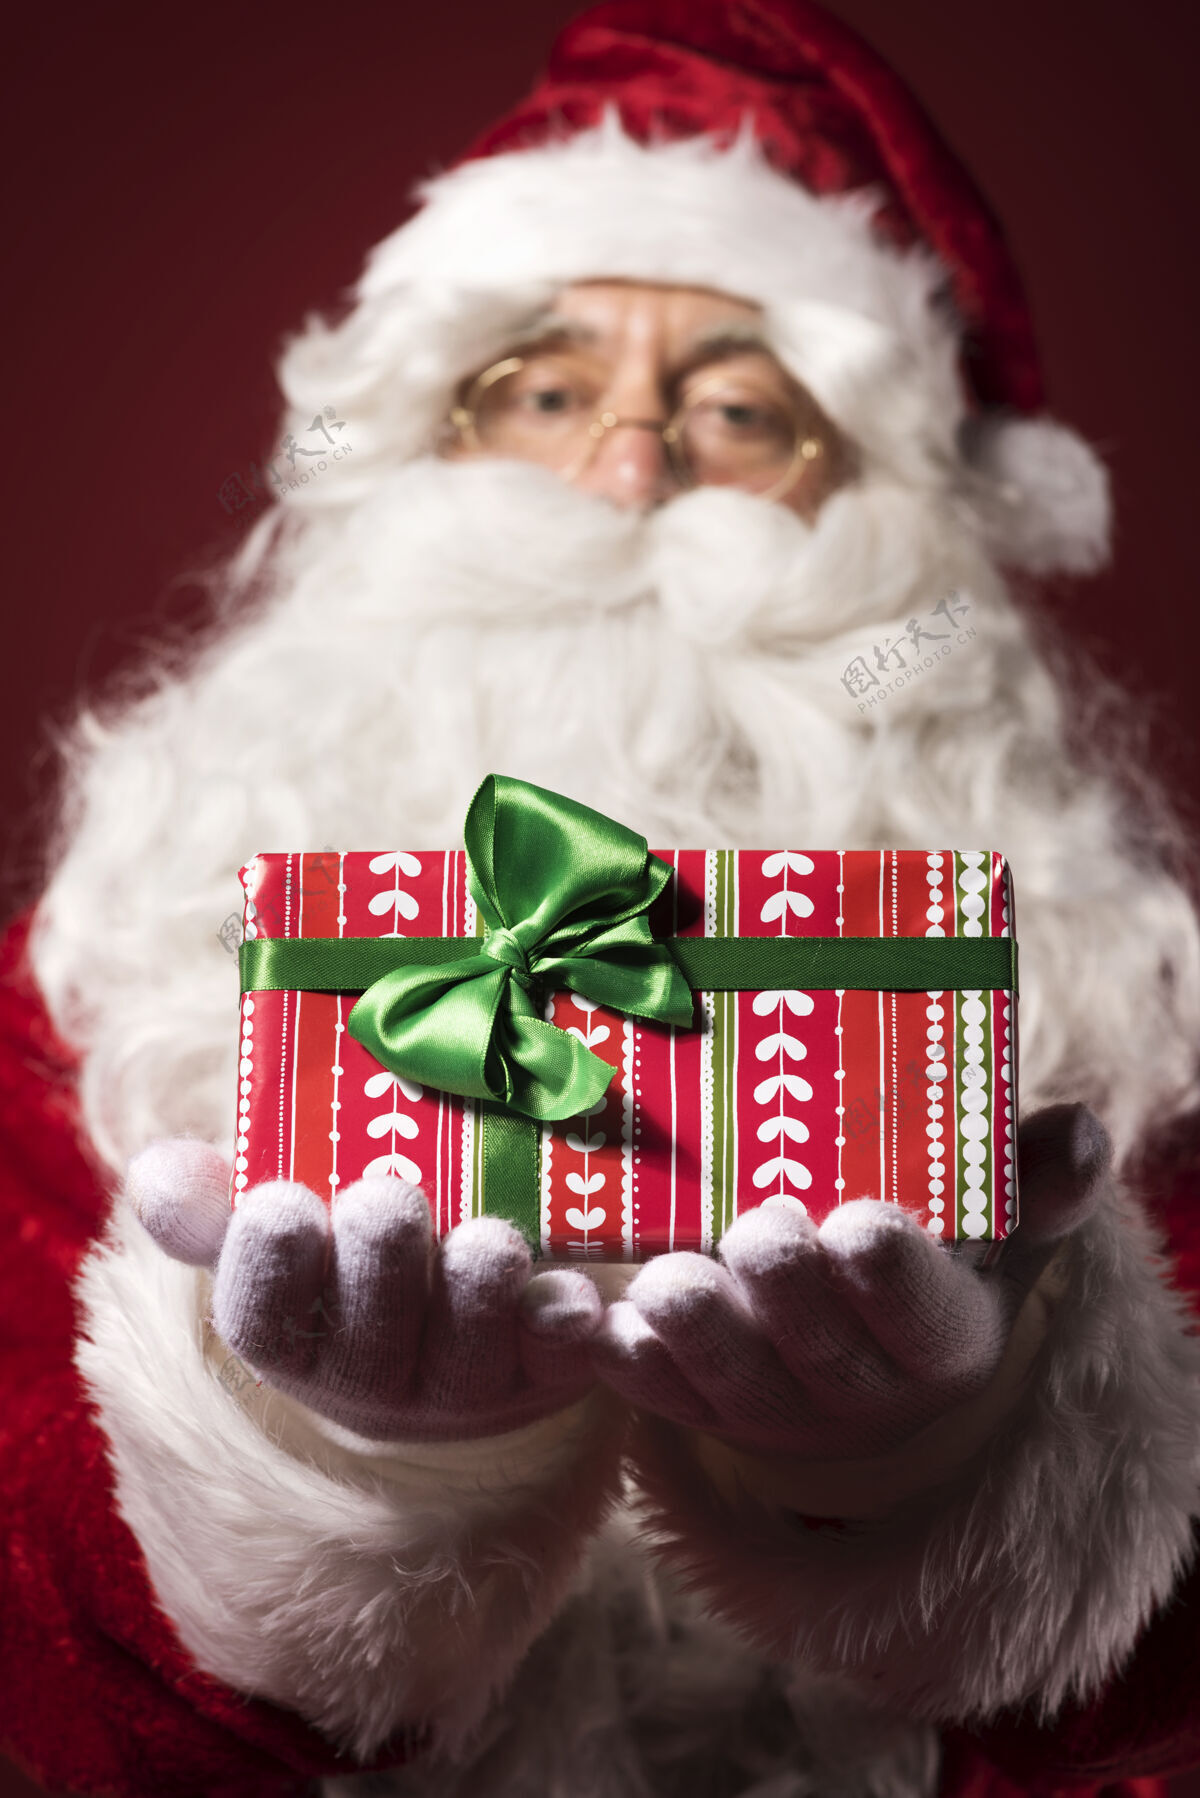 平安夜圣诞老人带着礼品盒传统看镜头姿势